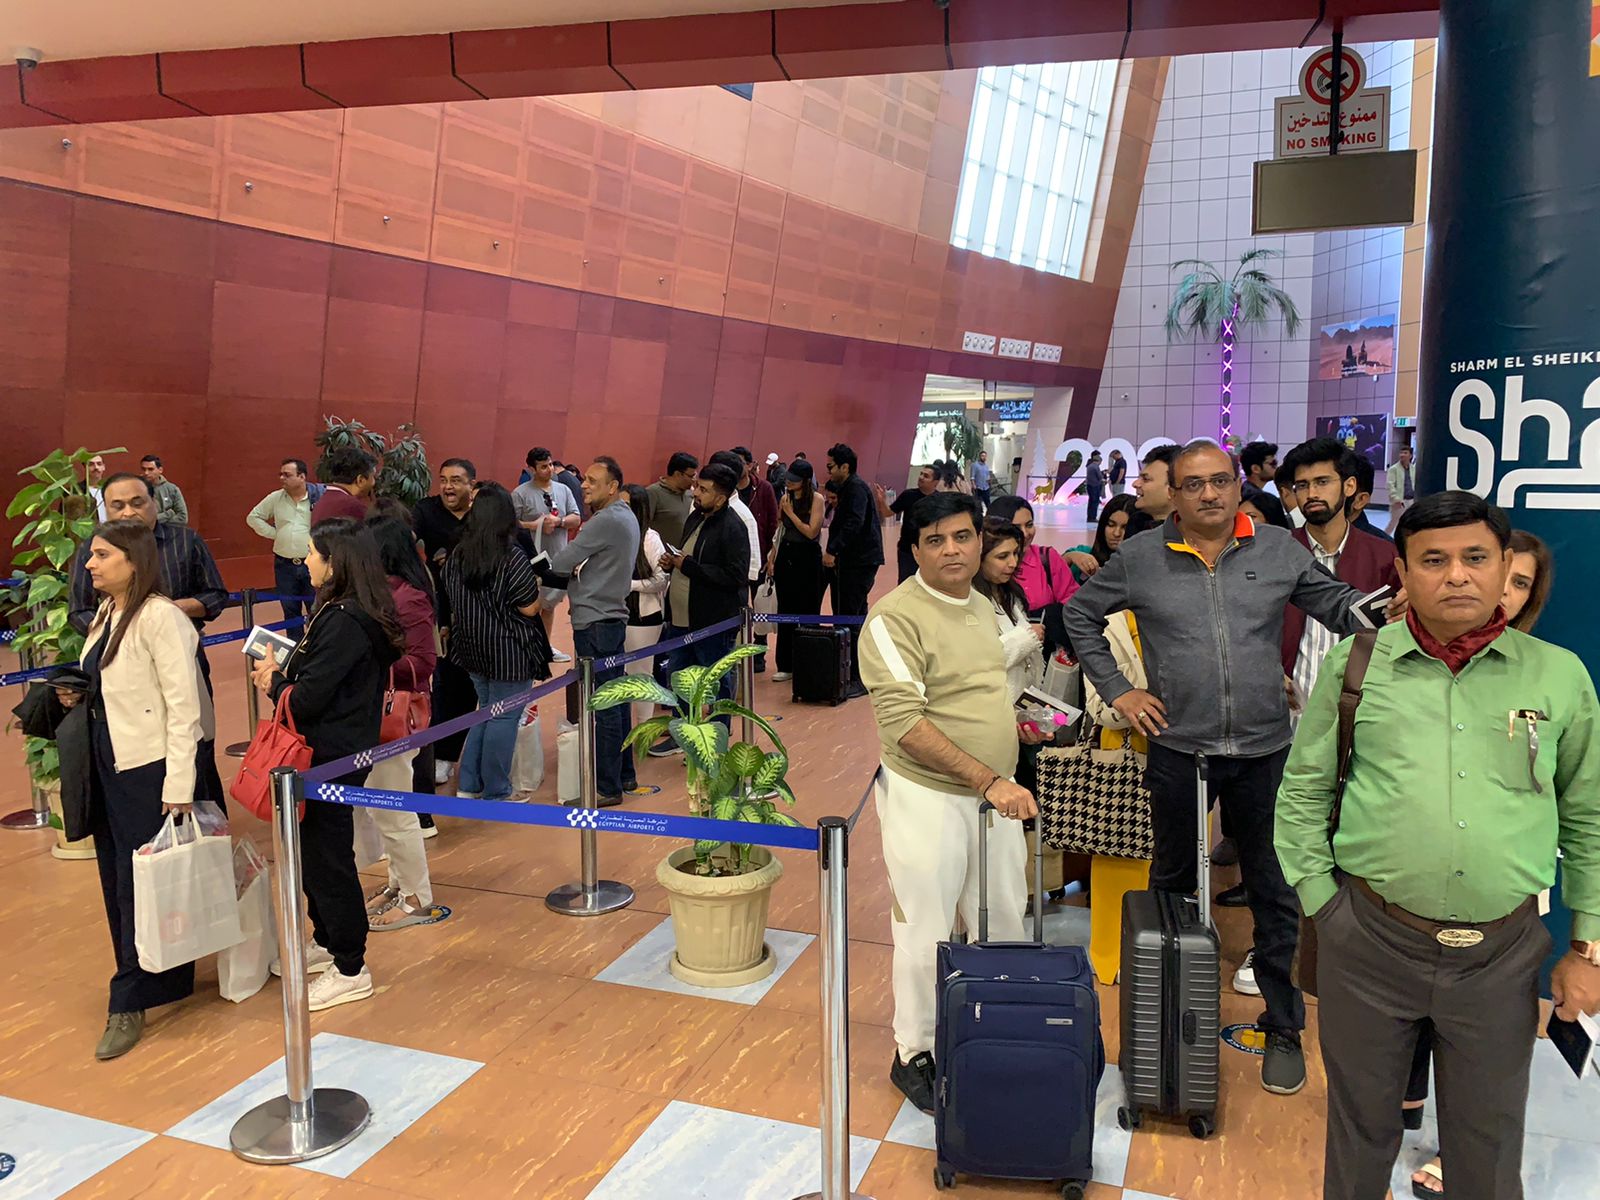 وصول أولي الرحلات المباشرة القادمة من الهند إلي مطار شرم الشيخ (2)